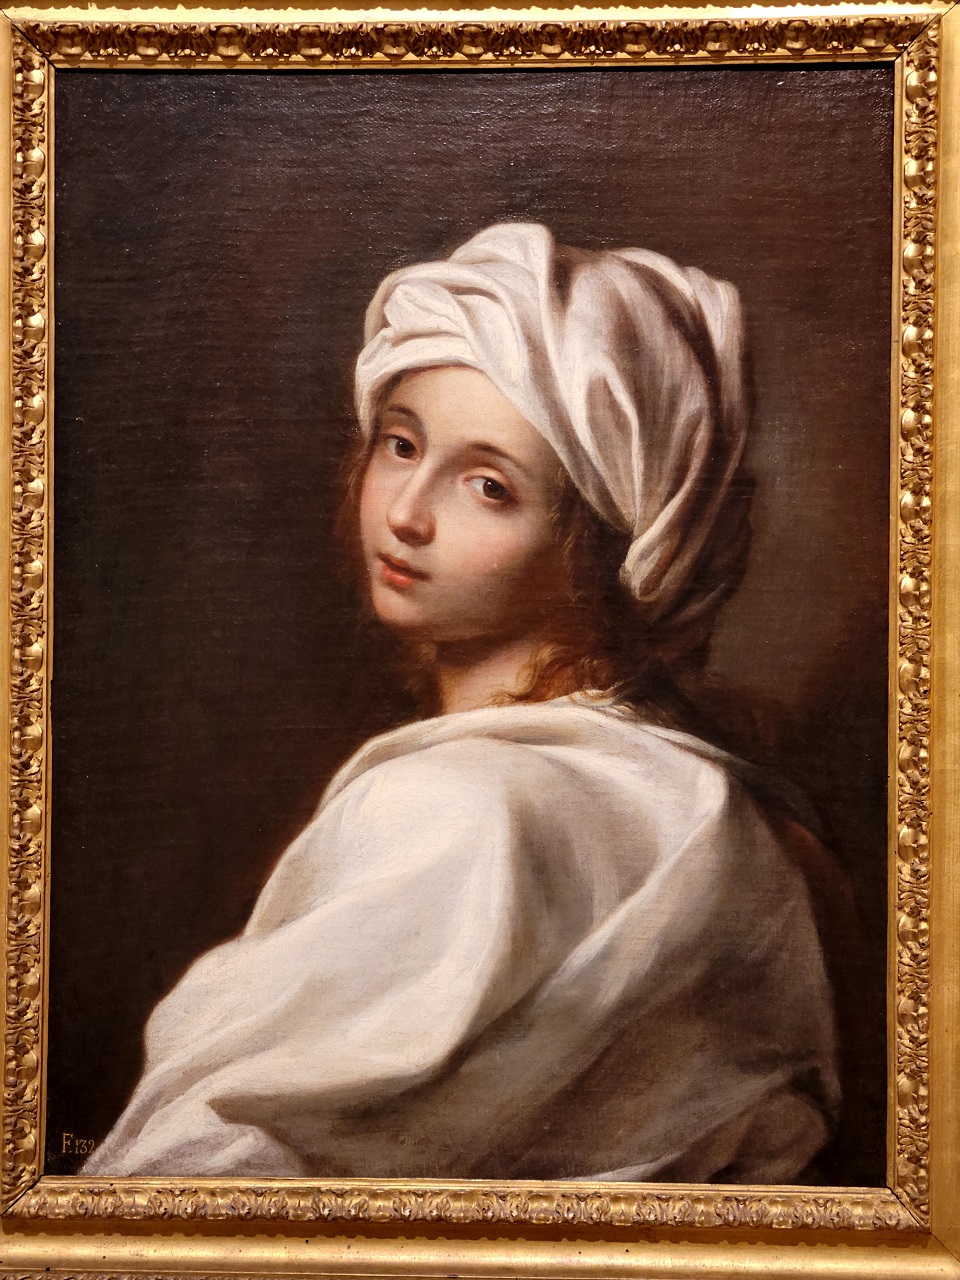 바르벨리니 고전 미술관에 있는 귀도 레니의 작품 '터번을 쓴 여인'.